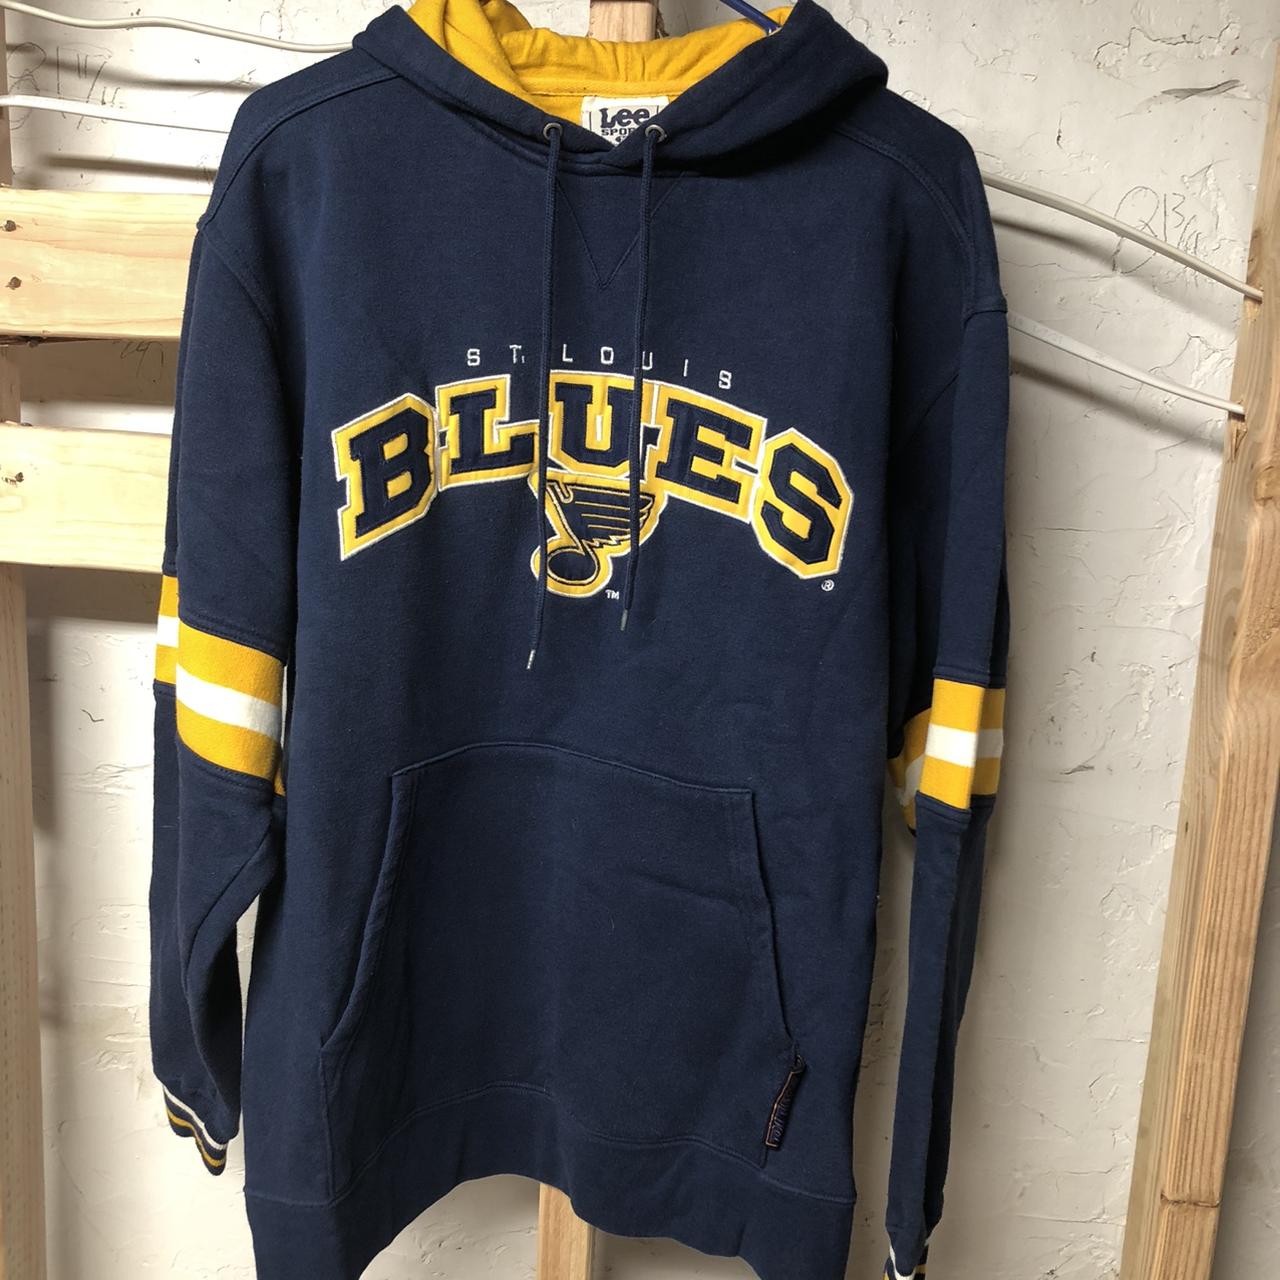 St. Louis Blues 90s vintage jersey. - Depop